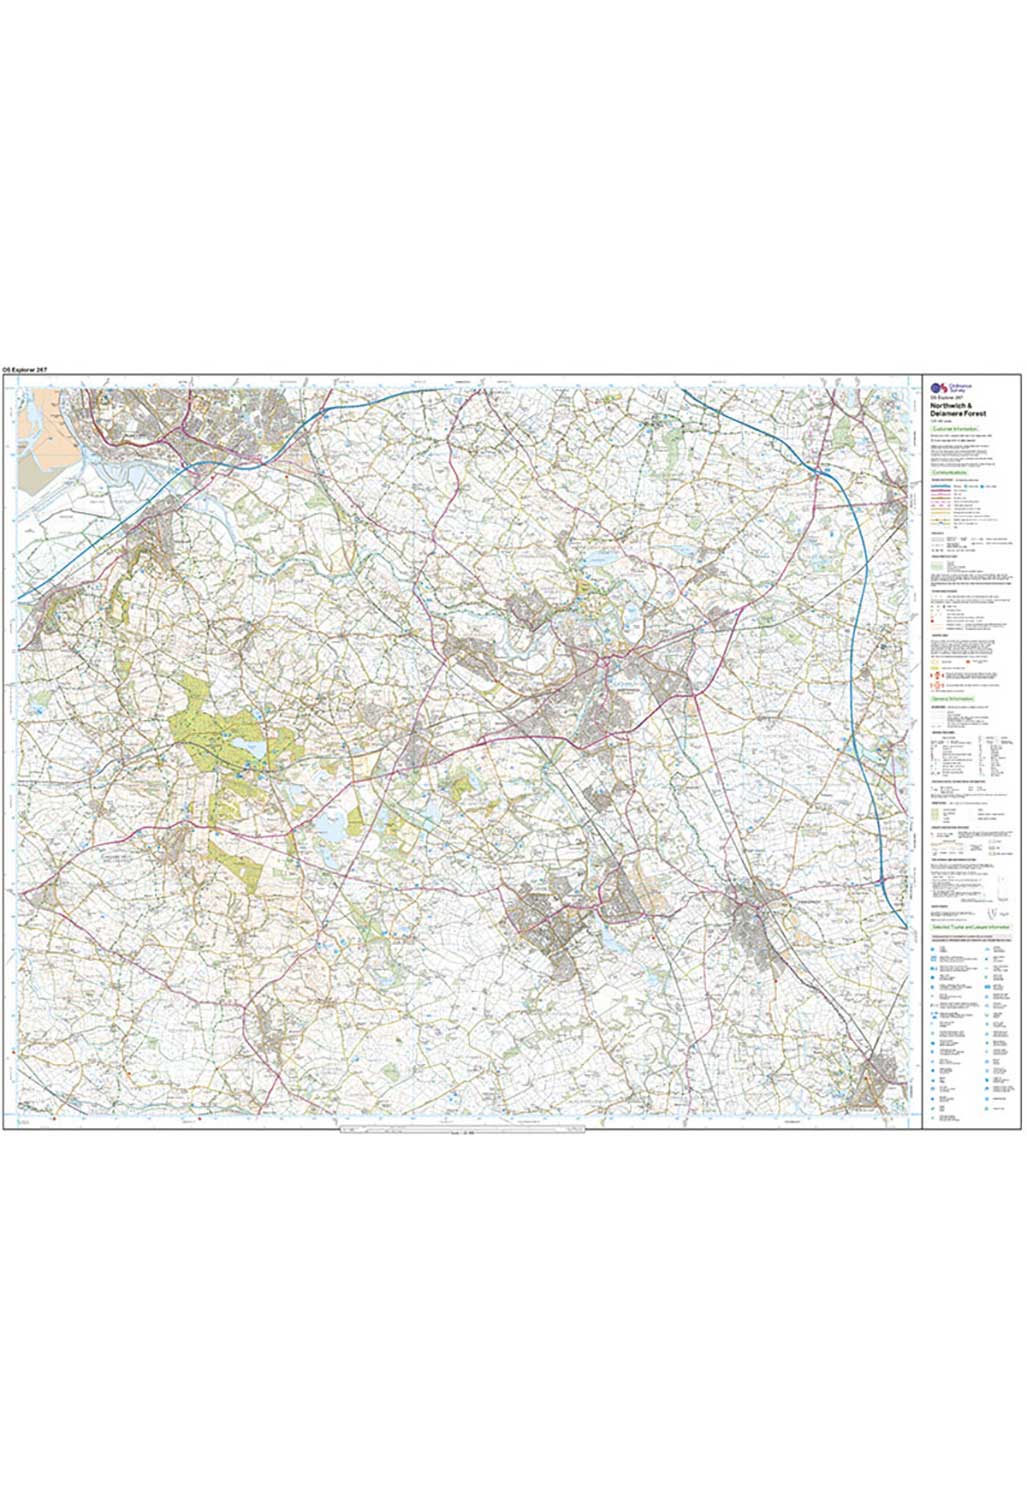 Ordnance Survey Northwich & Delamere Forest - OS Explorer 267 Map